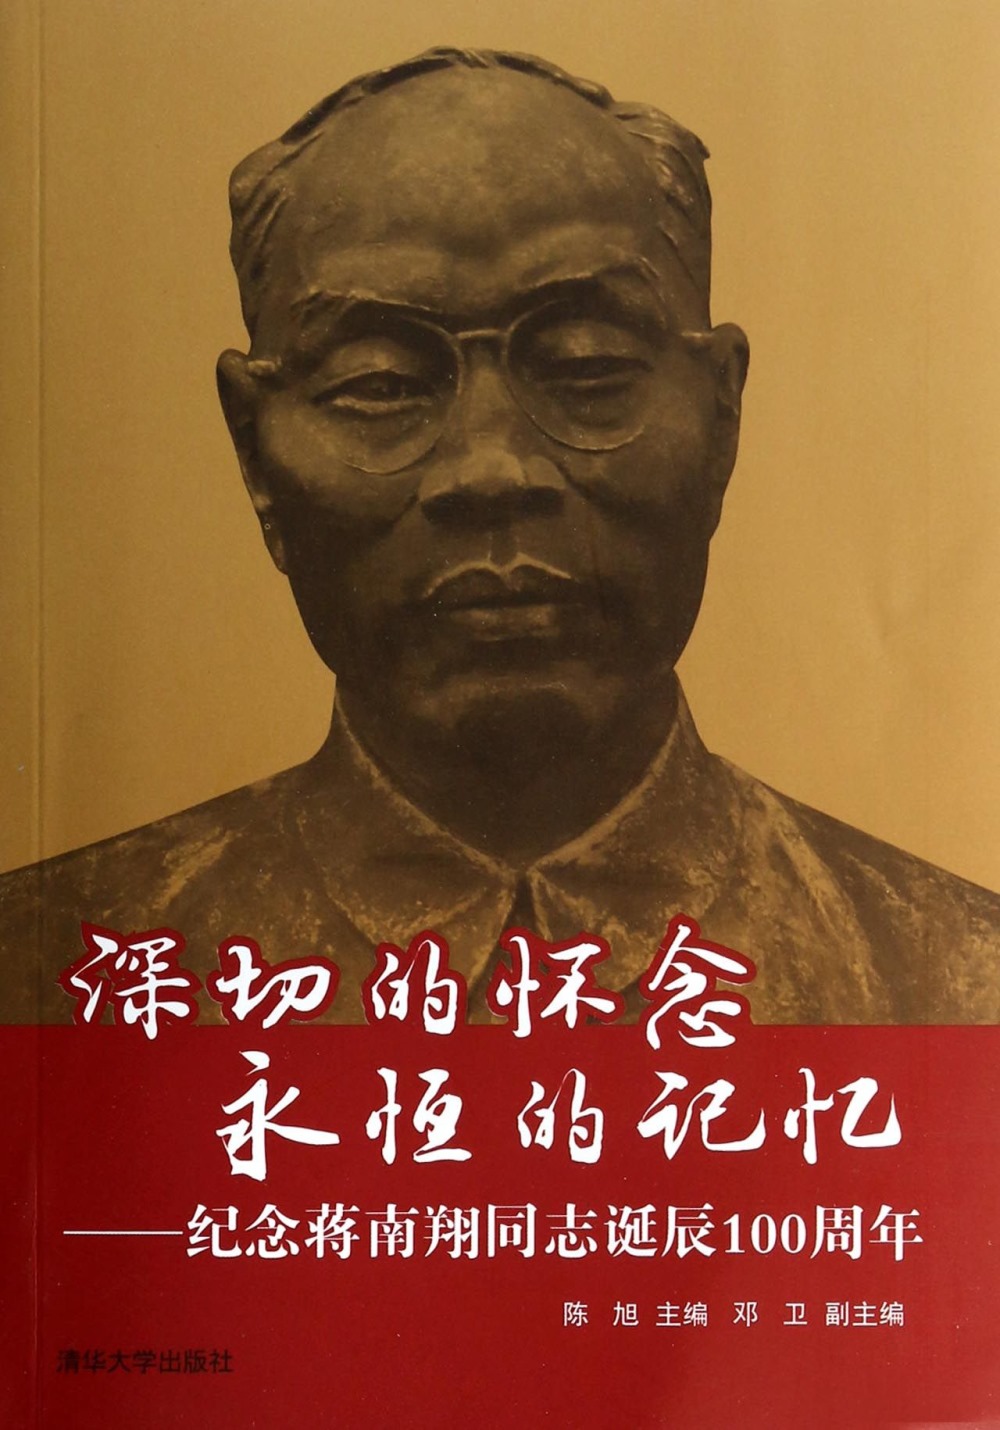 深切的懷念 永恆的記憶：紀念蔣南翔同志誕辰100周年